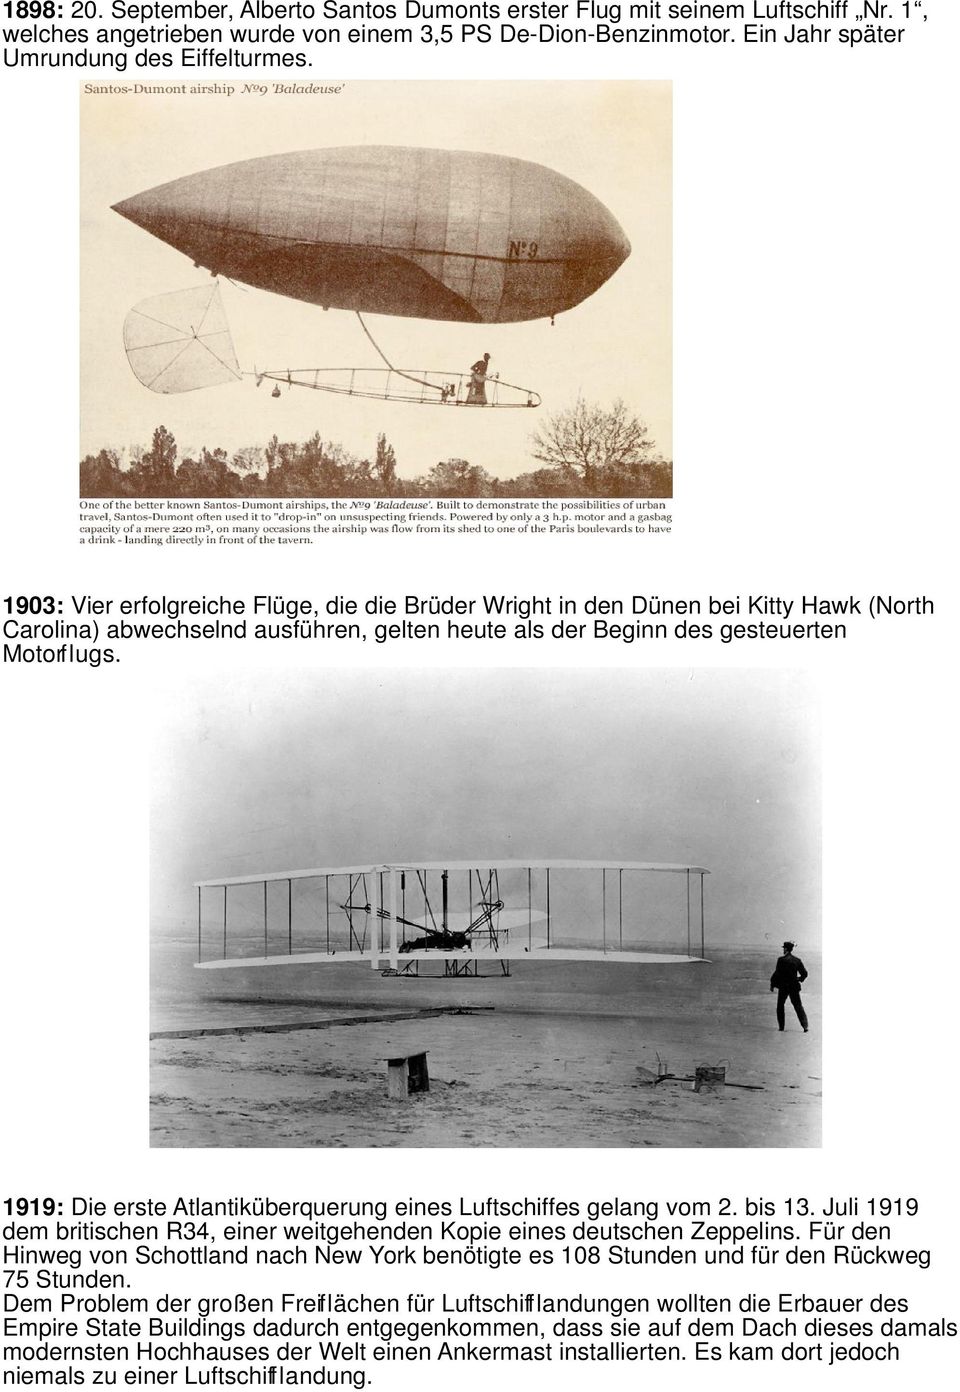 1919: Die erste Atlantiküberquerung eines Luftschiffes gelang vom 2. bis 13. Juli 1919 dem britischen R34, einer weitgehenden Kopie eines deutschen Zeppelins.